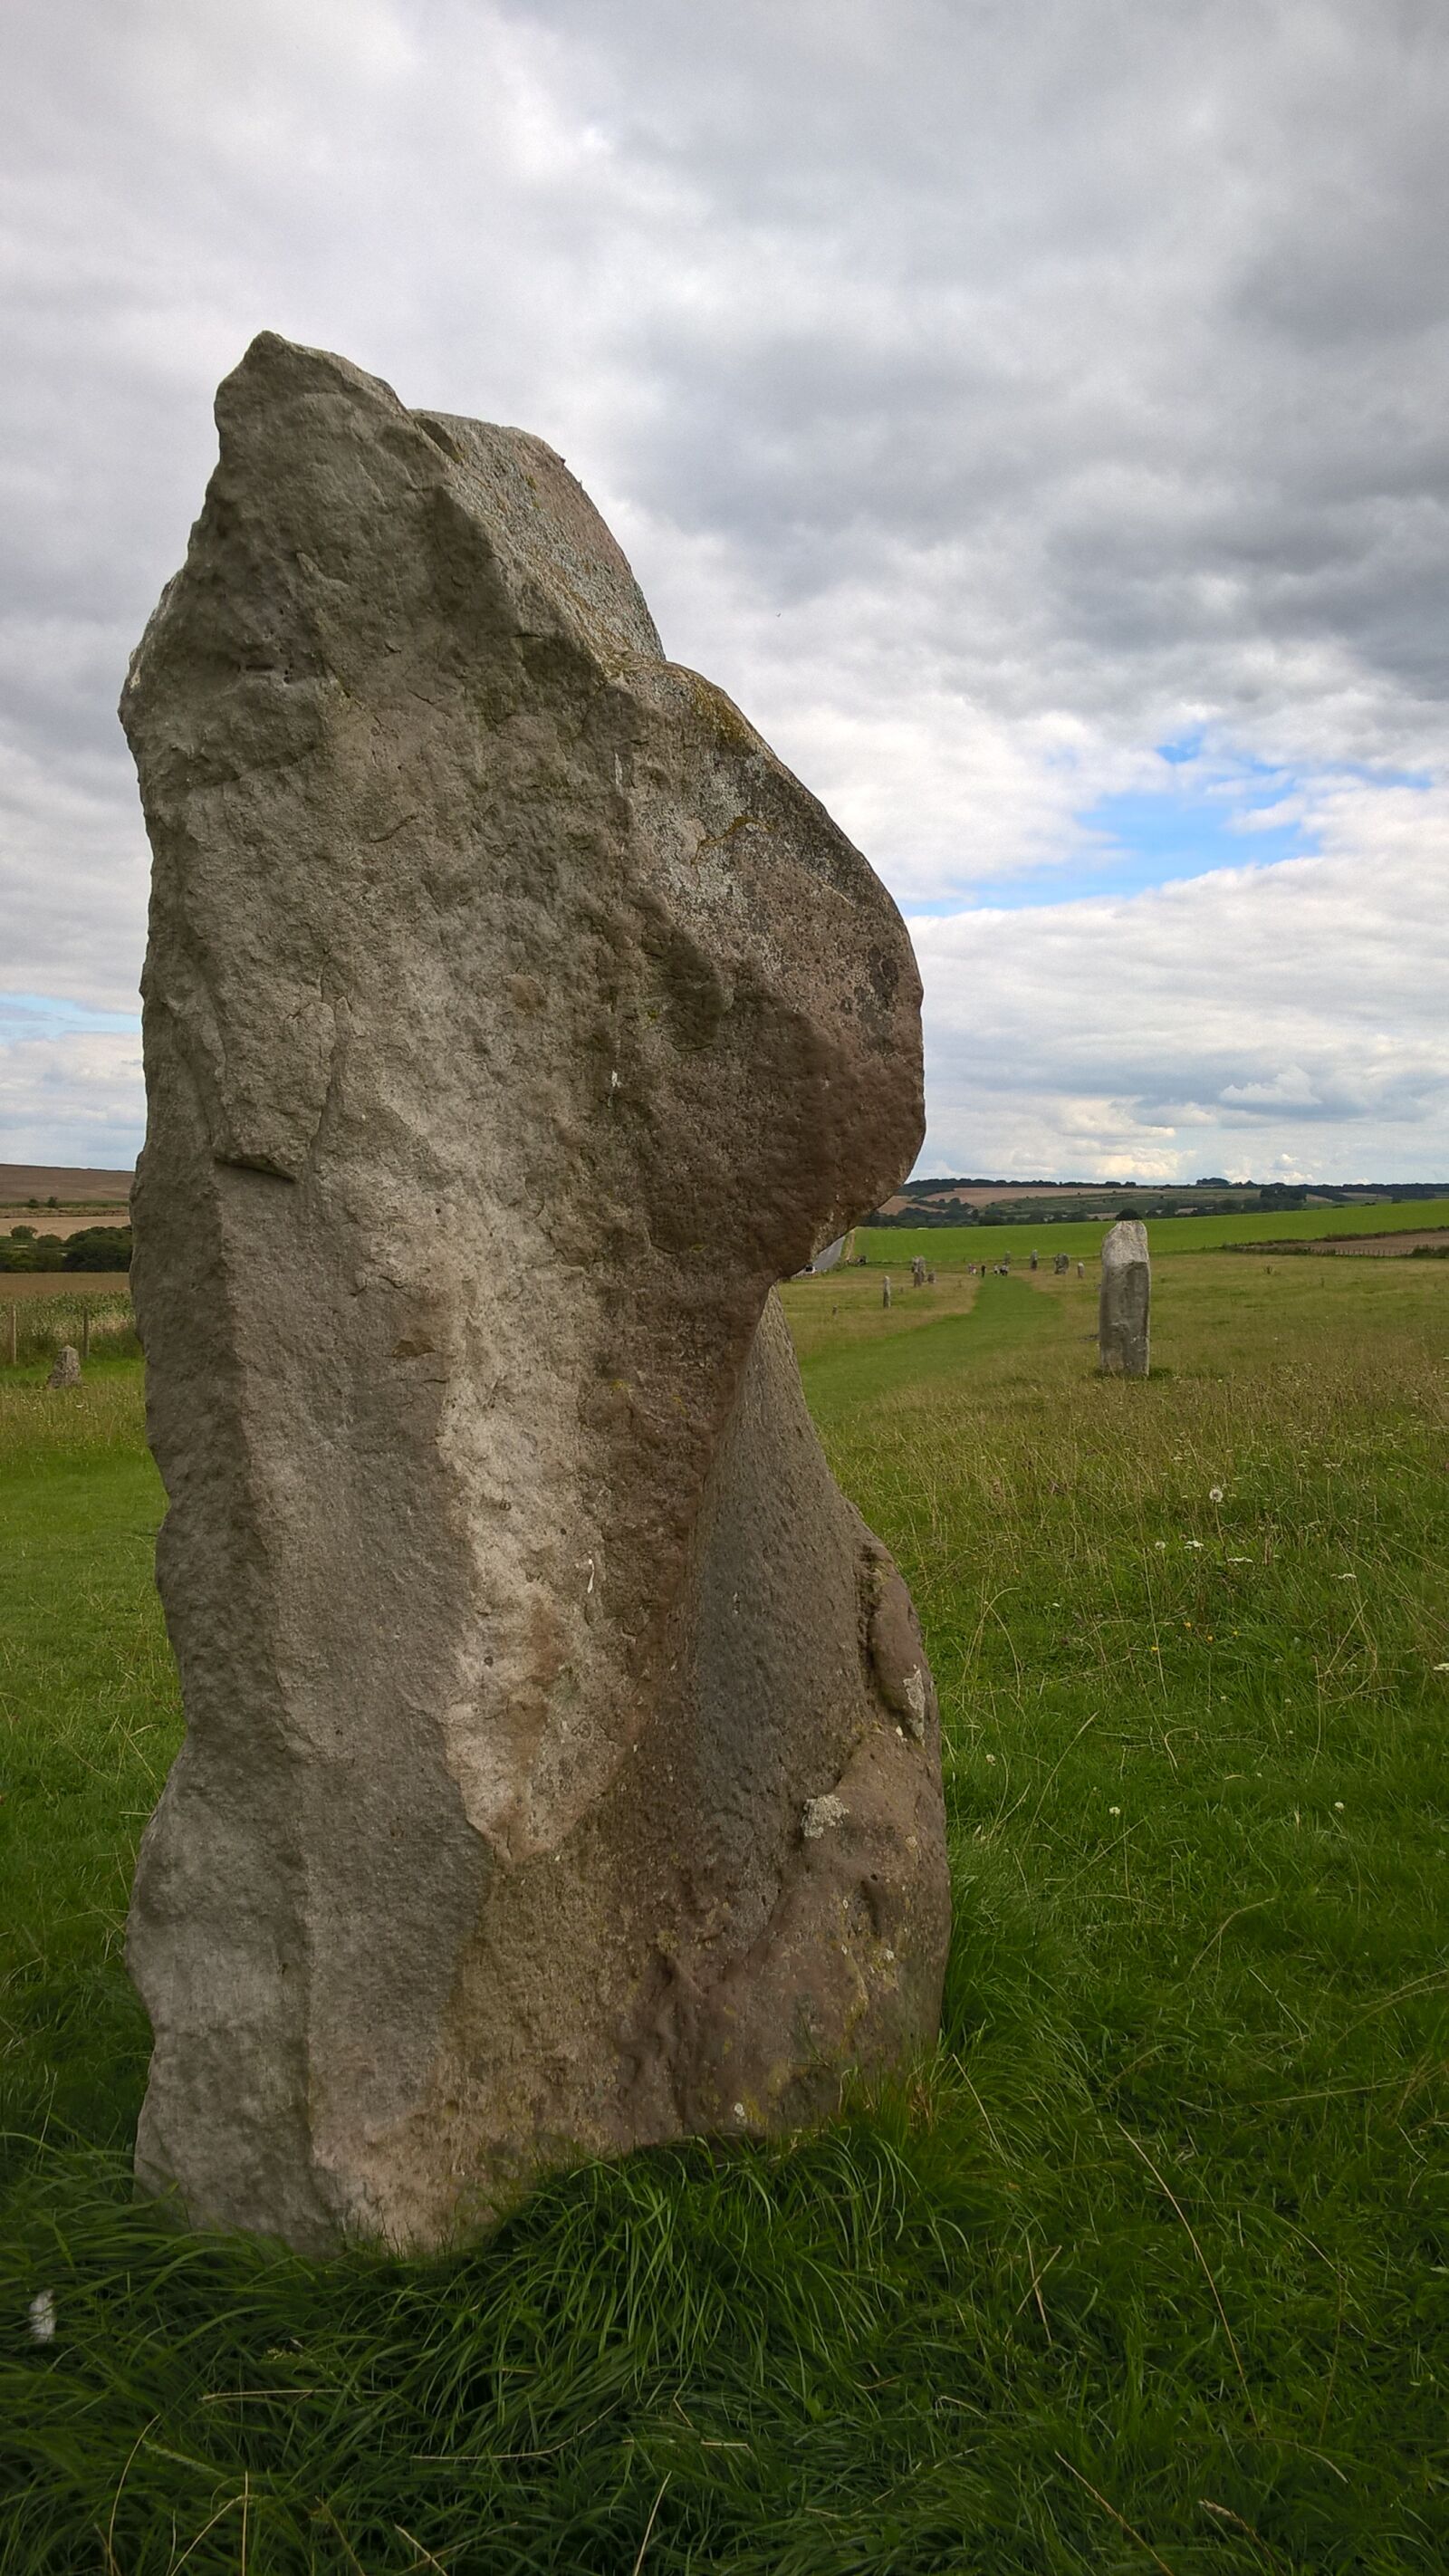 Nokia Lumia 830 sample photo. Megaliths, megalithic, neolithic photography